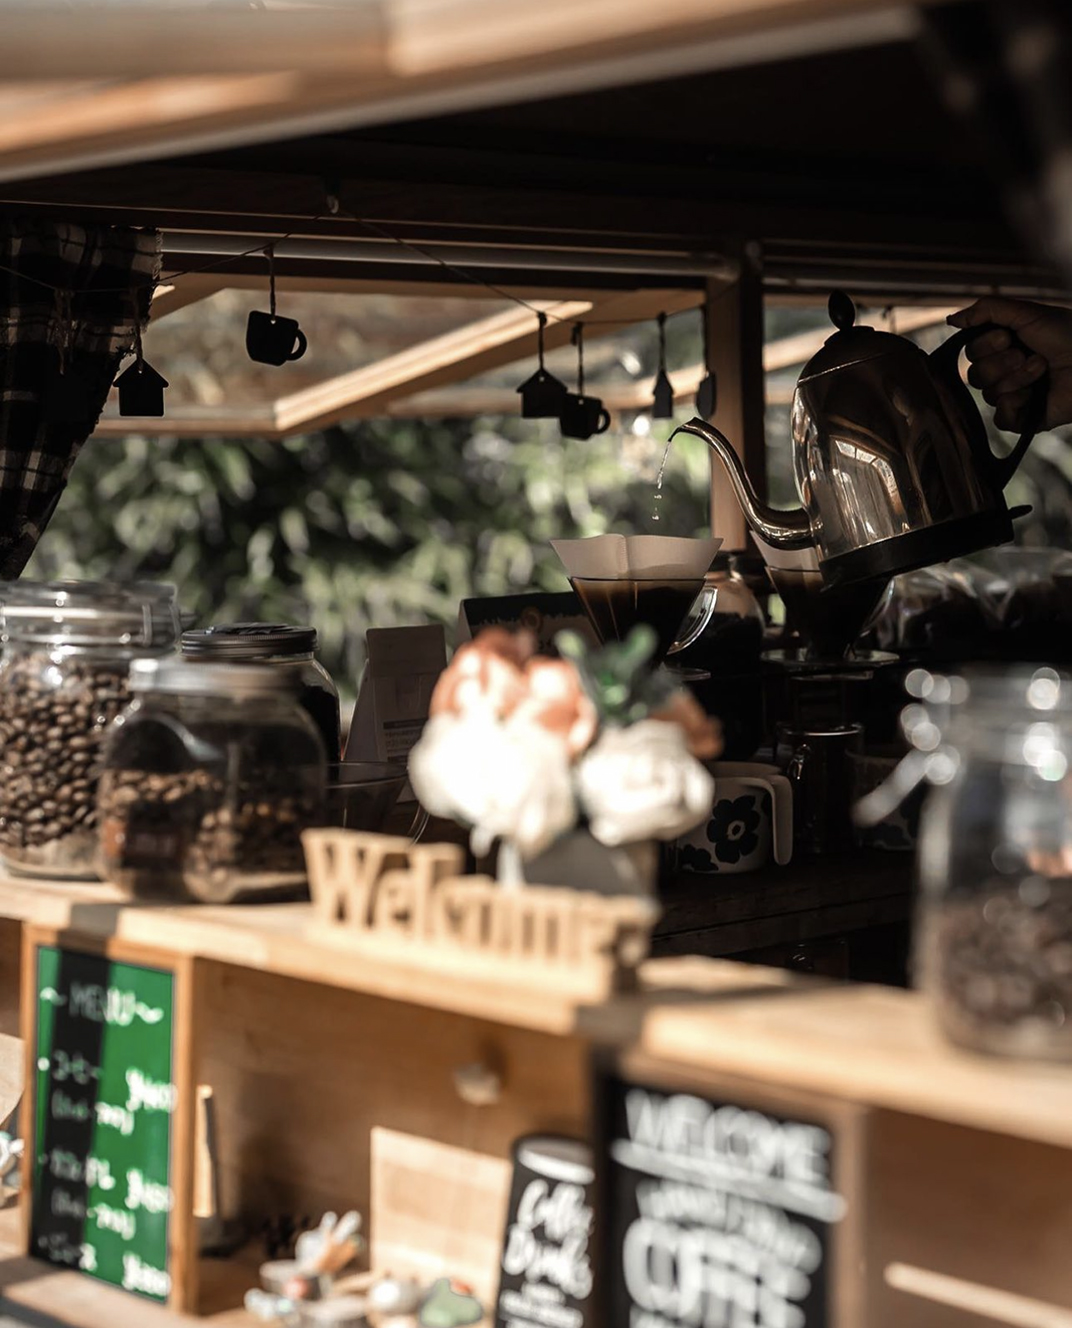 老板自己种的咖啡豆和他的咖啡车 日本 北京 上海 珠海 广州 武汉 杭州 佛山 香港 澳门 logo设计 vi设计 空间设计